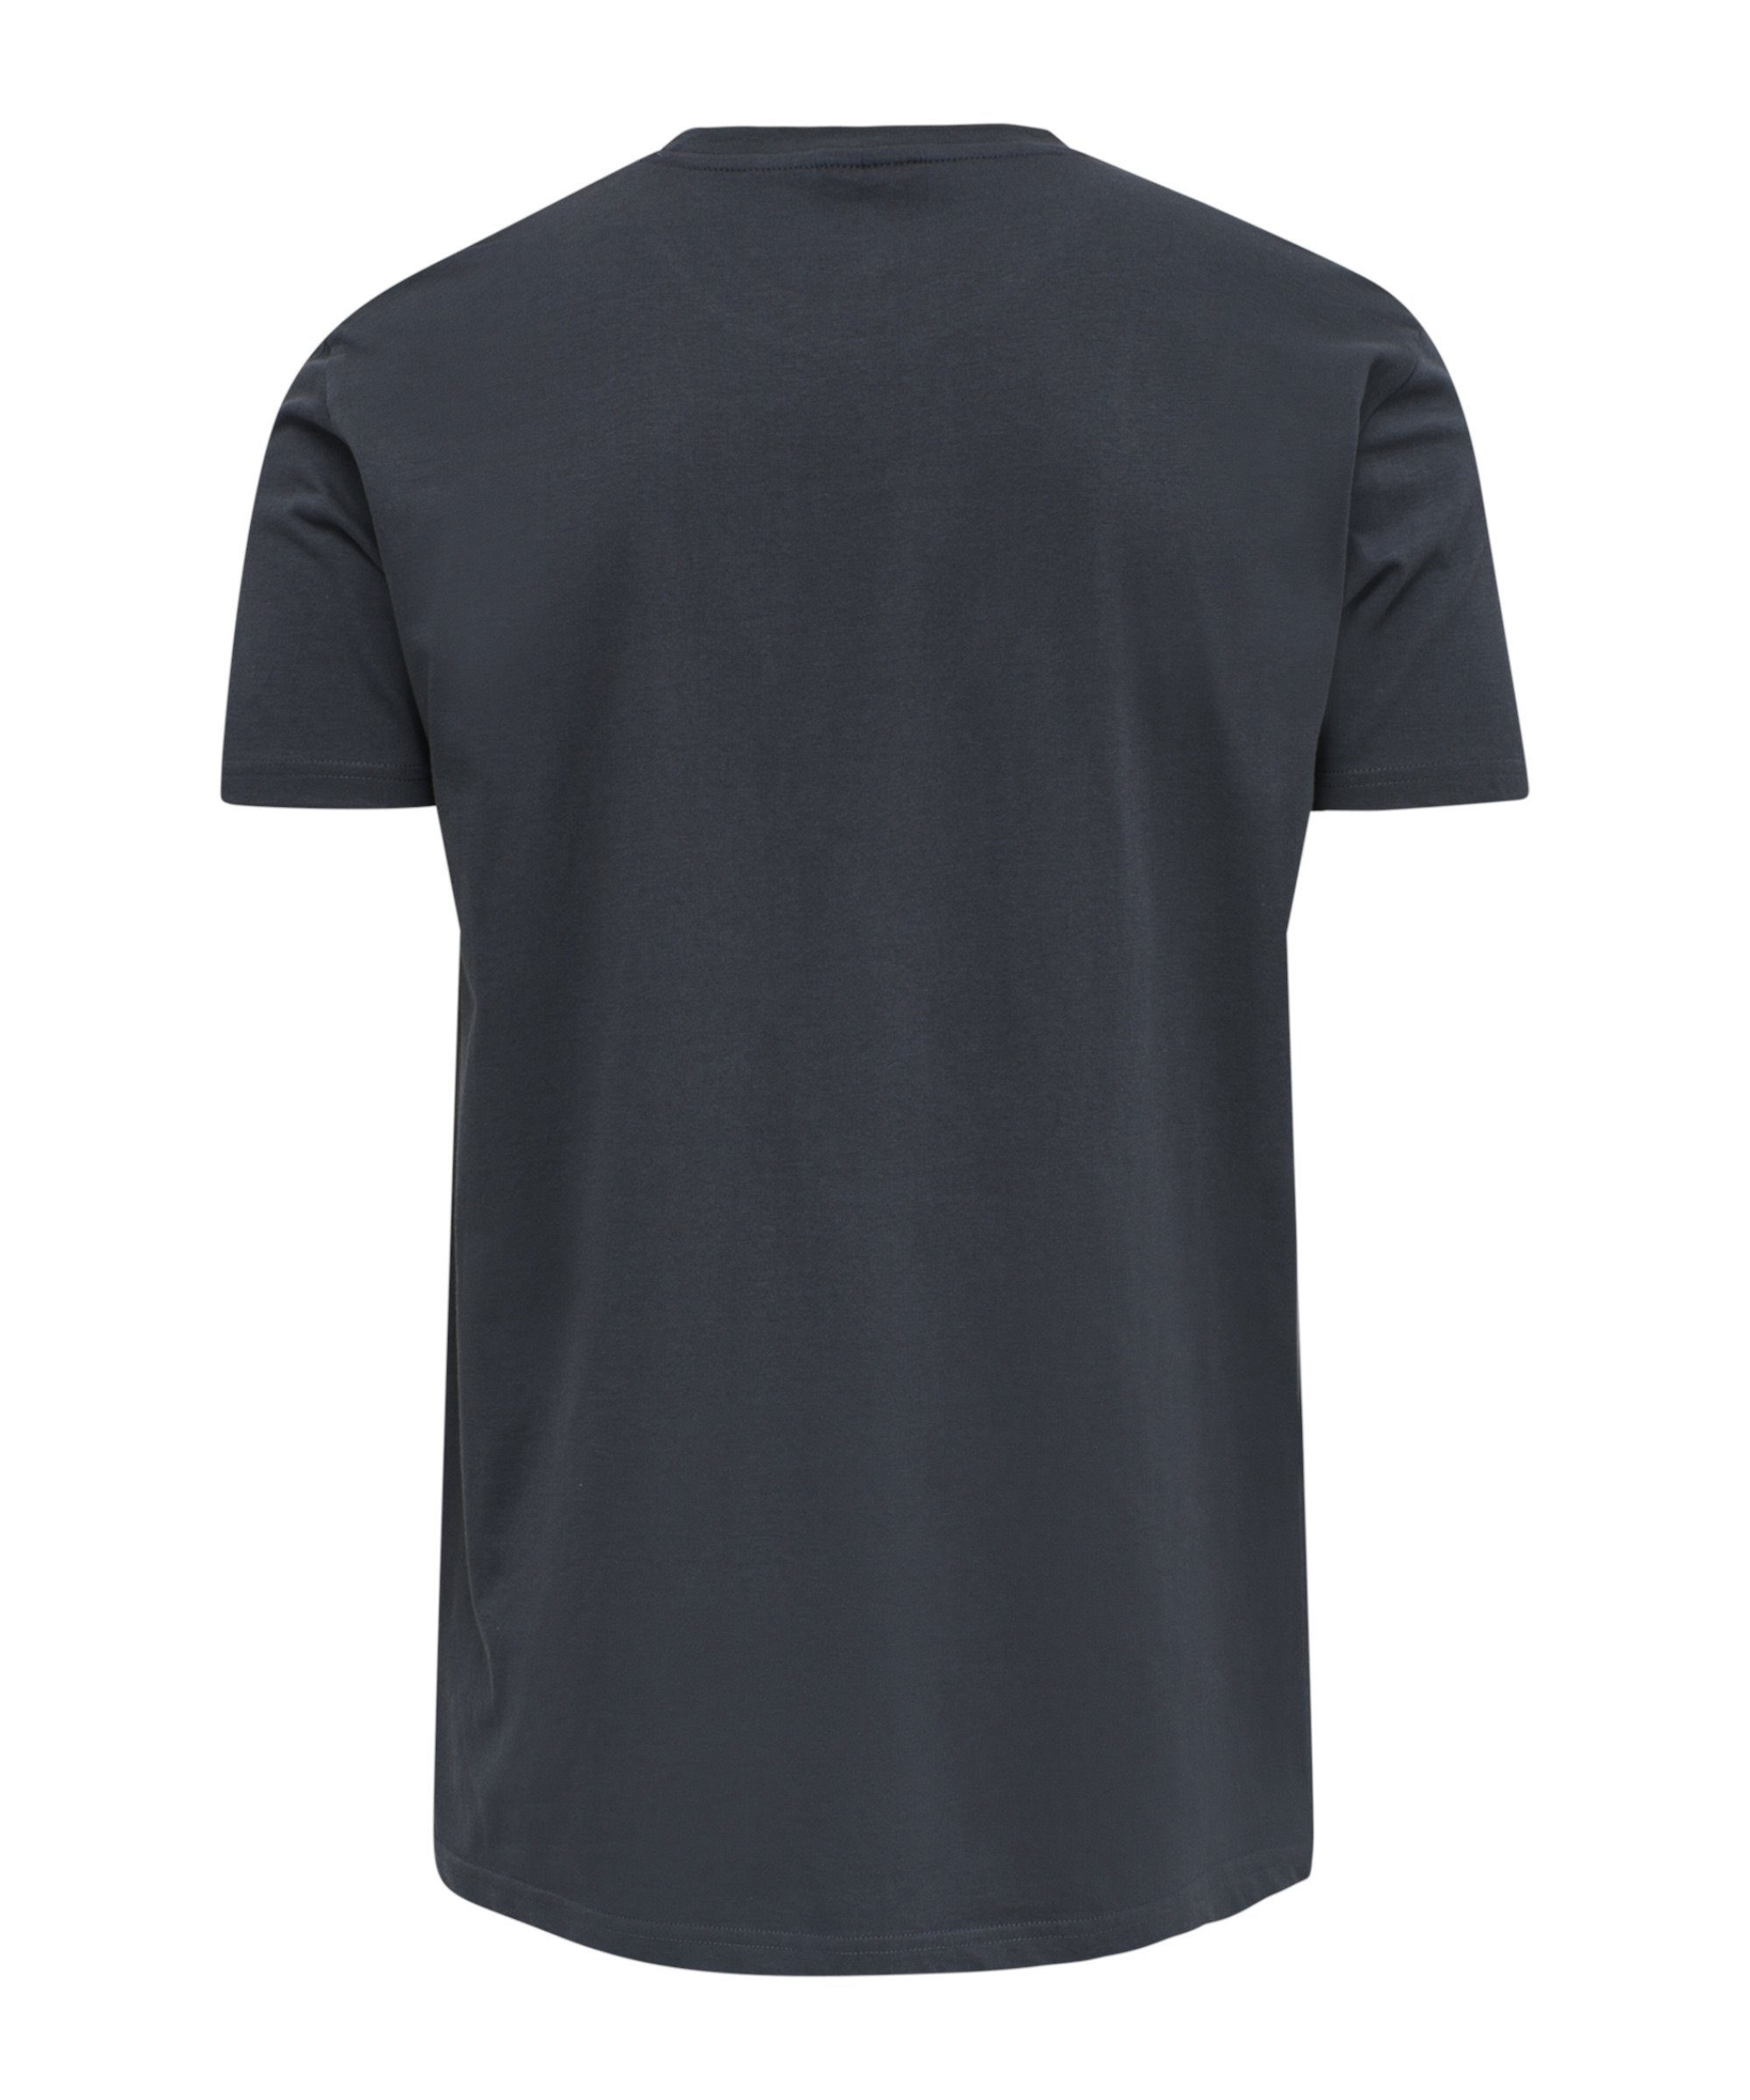 Cotton hummel Logo T-Shirt grau default T-Shirt